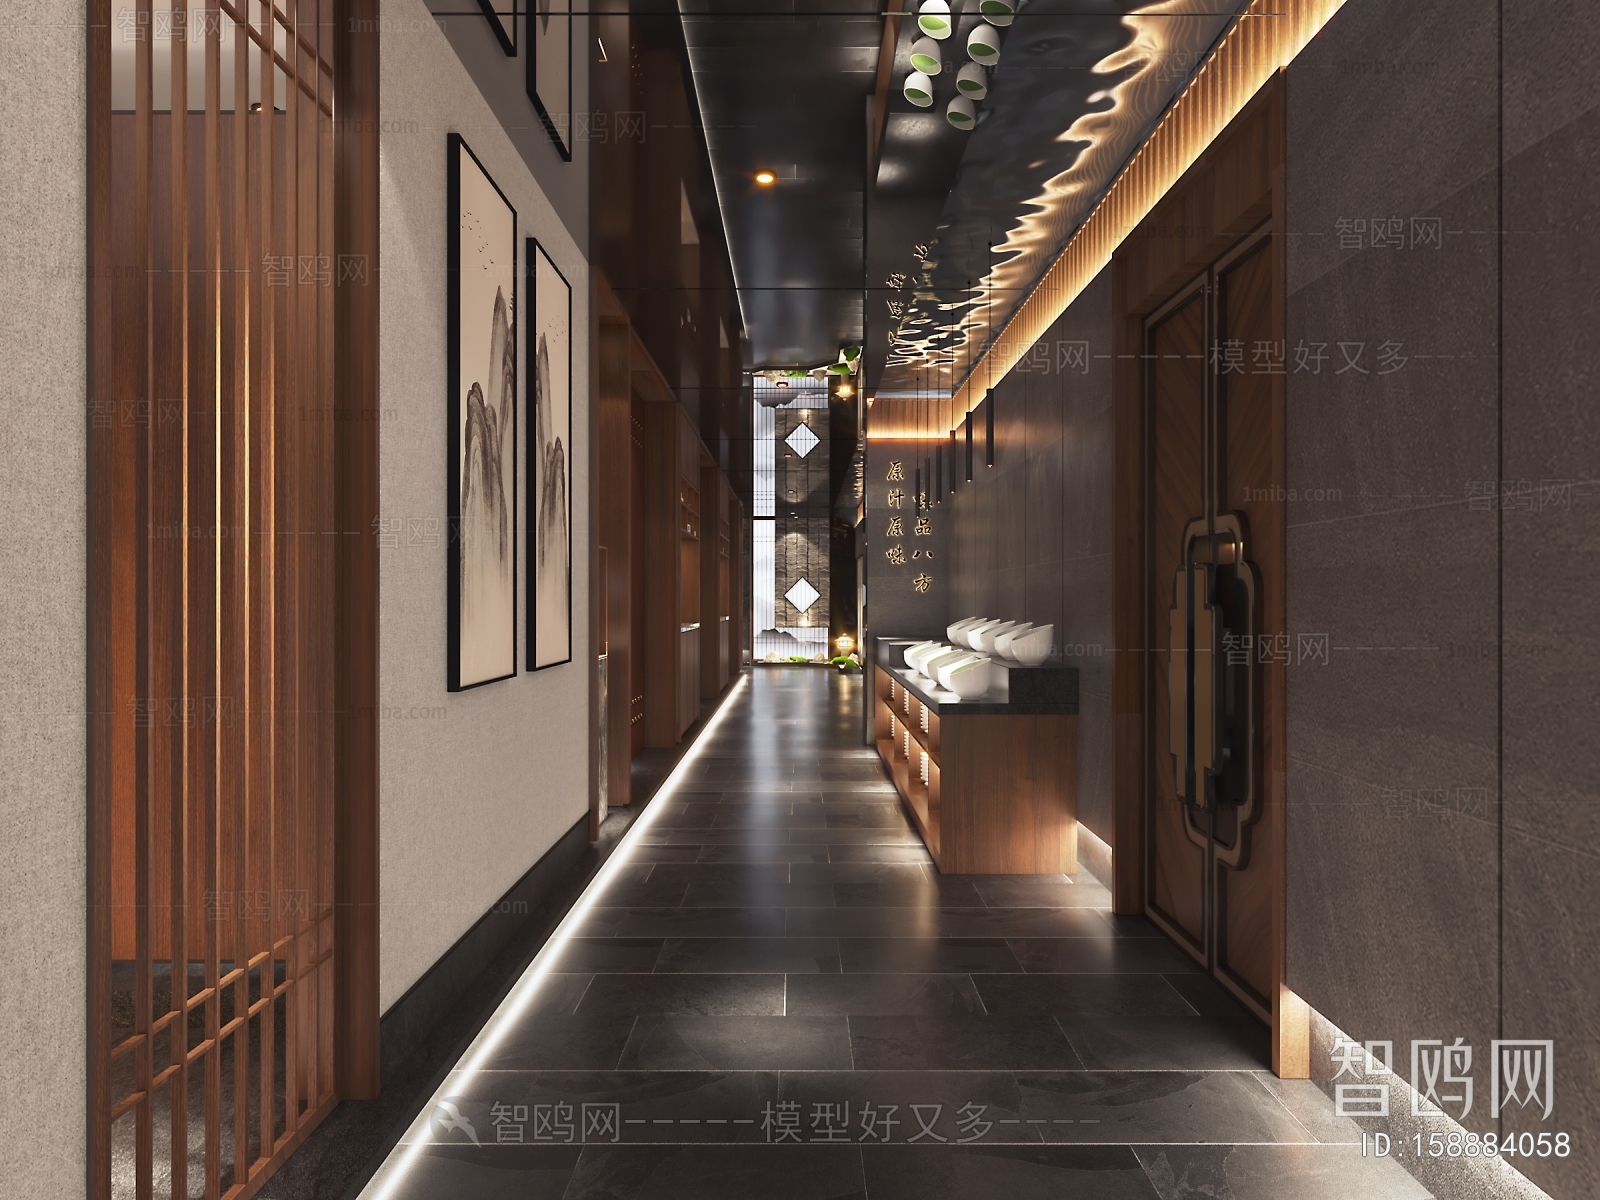 多场景-新中式火锅店走廊+卫生间+茶室